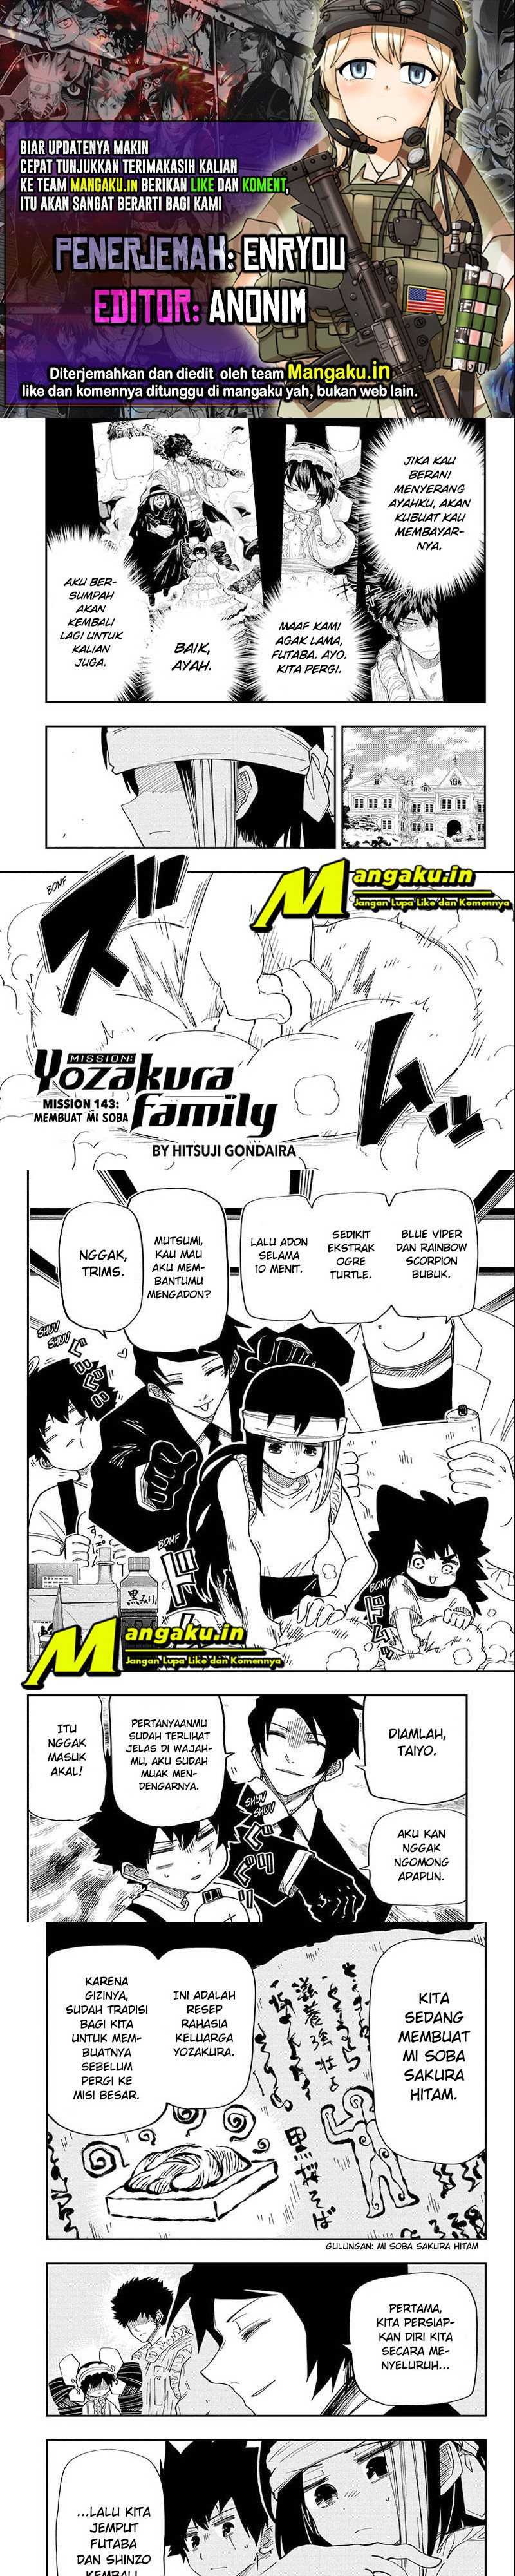 Mission: Yozakura Family Chapter 143